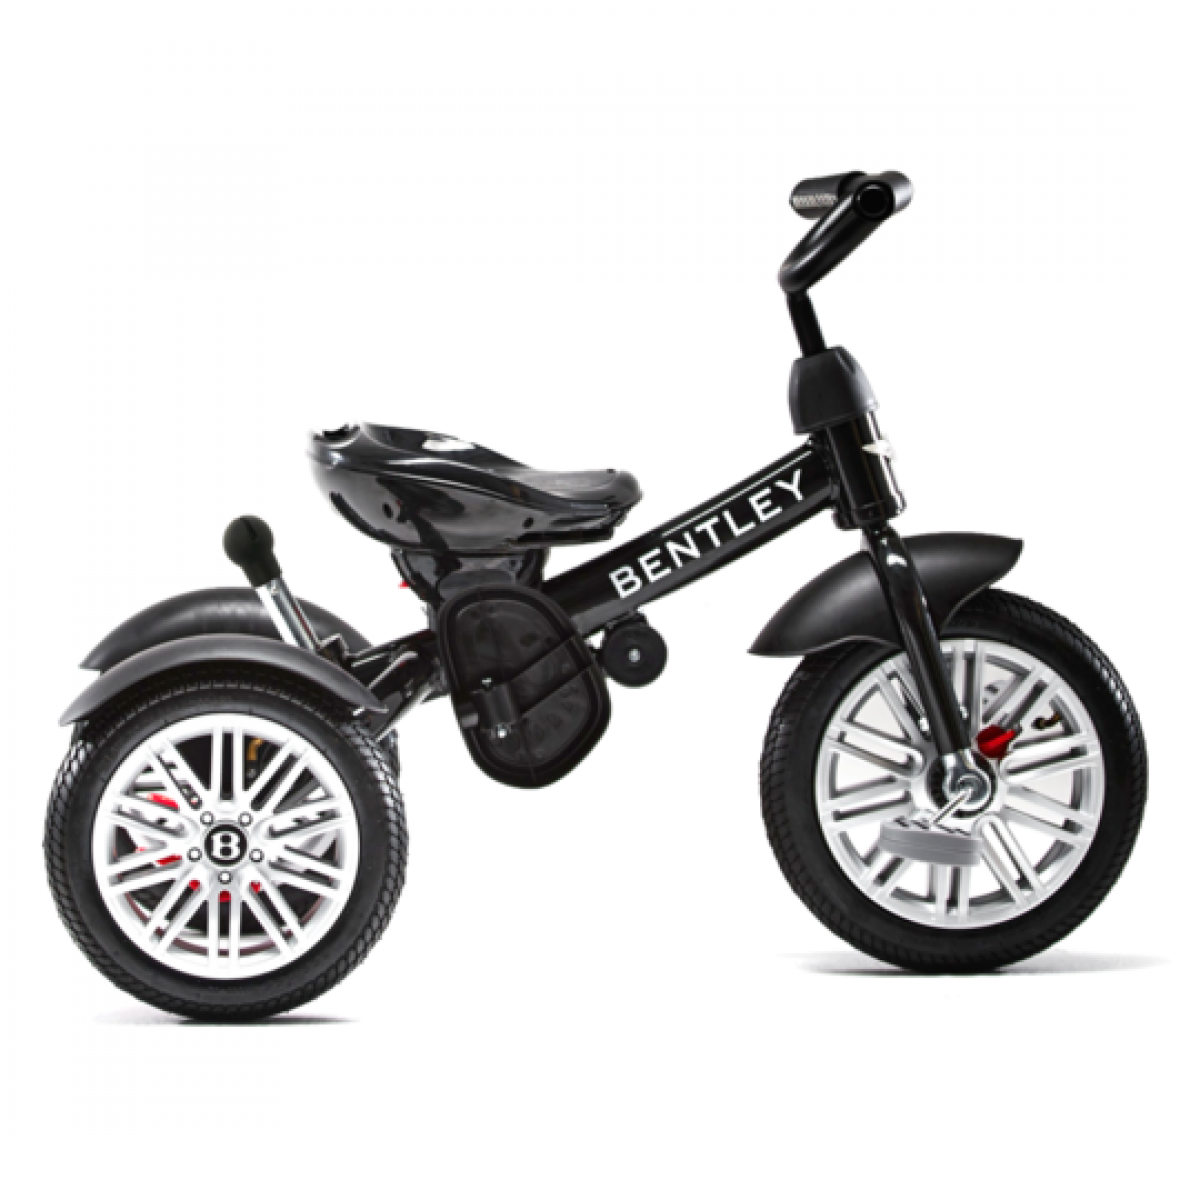 Onyx Black Trike Toddler Tricycle 6 in 1 Air Wheel Children Buggy Pram